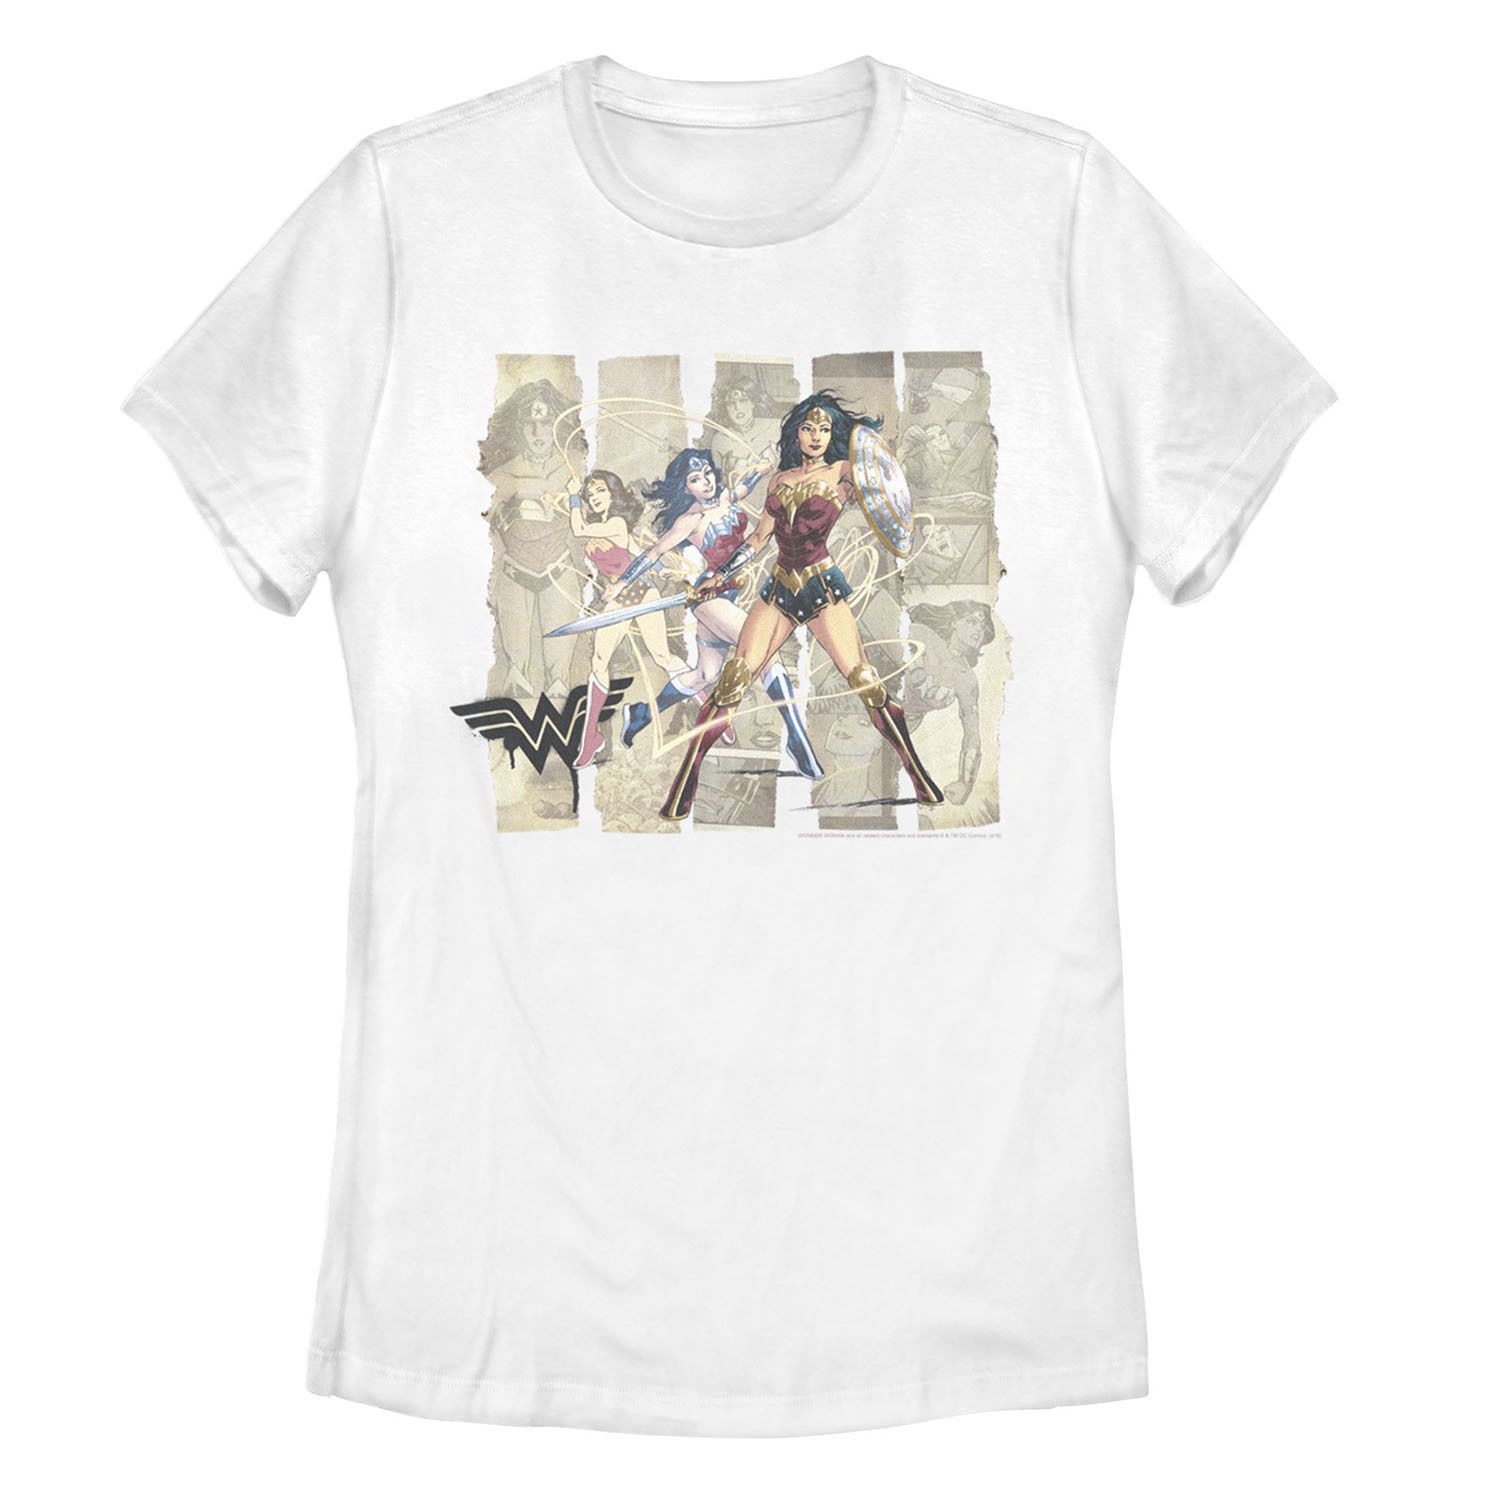 Детская футболка DC Comics «Чудо-женщина» с бумажными полосками и портретом с рисунком Licensed Character детская футболка с рисунком чудо женщина dc comics licensed character